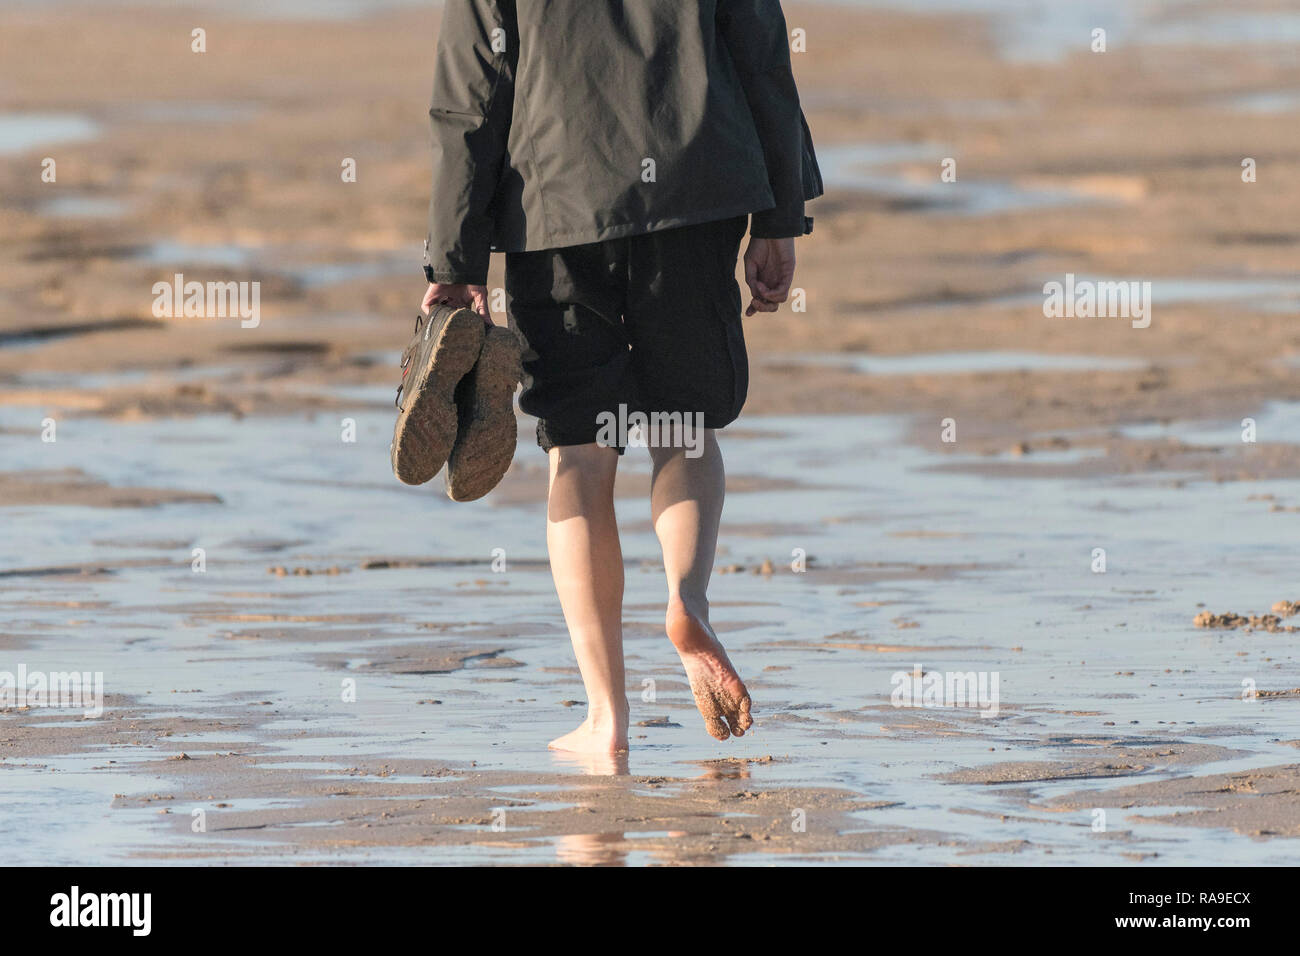 Eine Person zu Fuß am Strand barfuß mit seiner Hose aufgerollt. Stockfoto